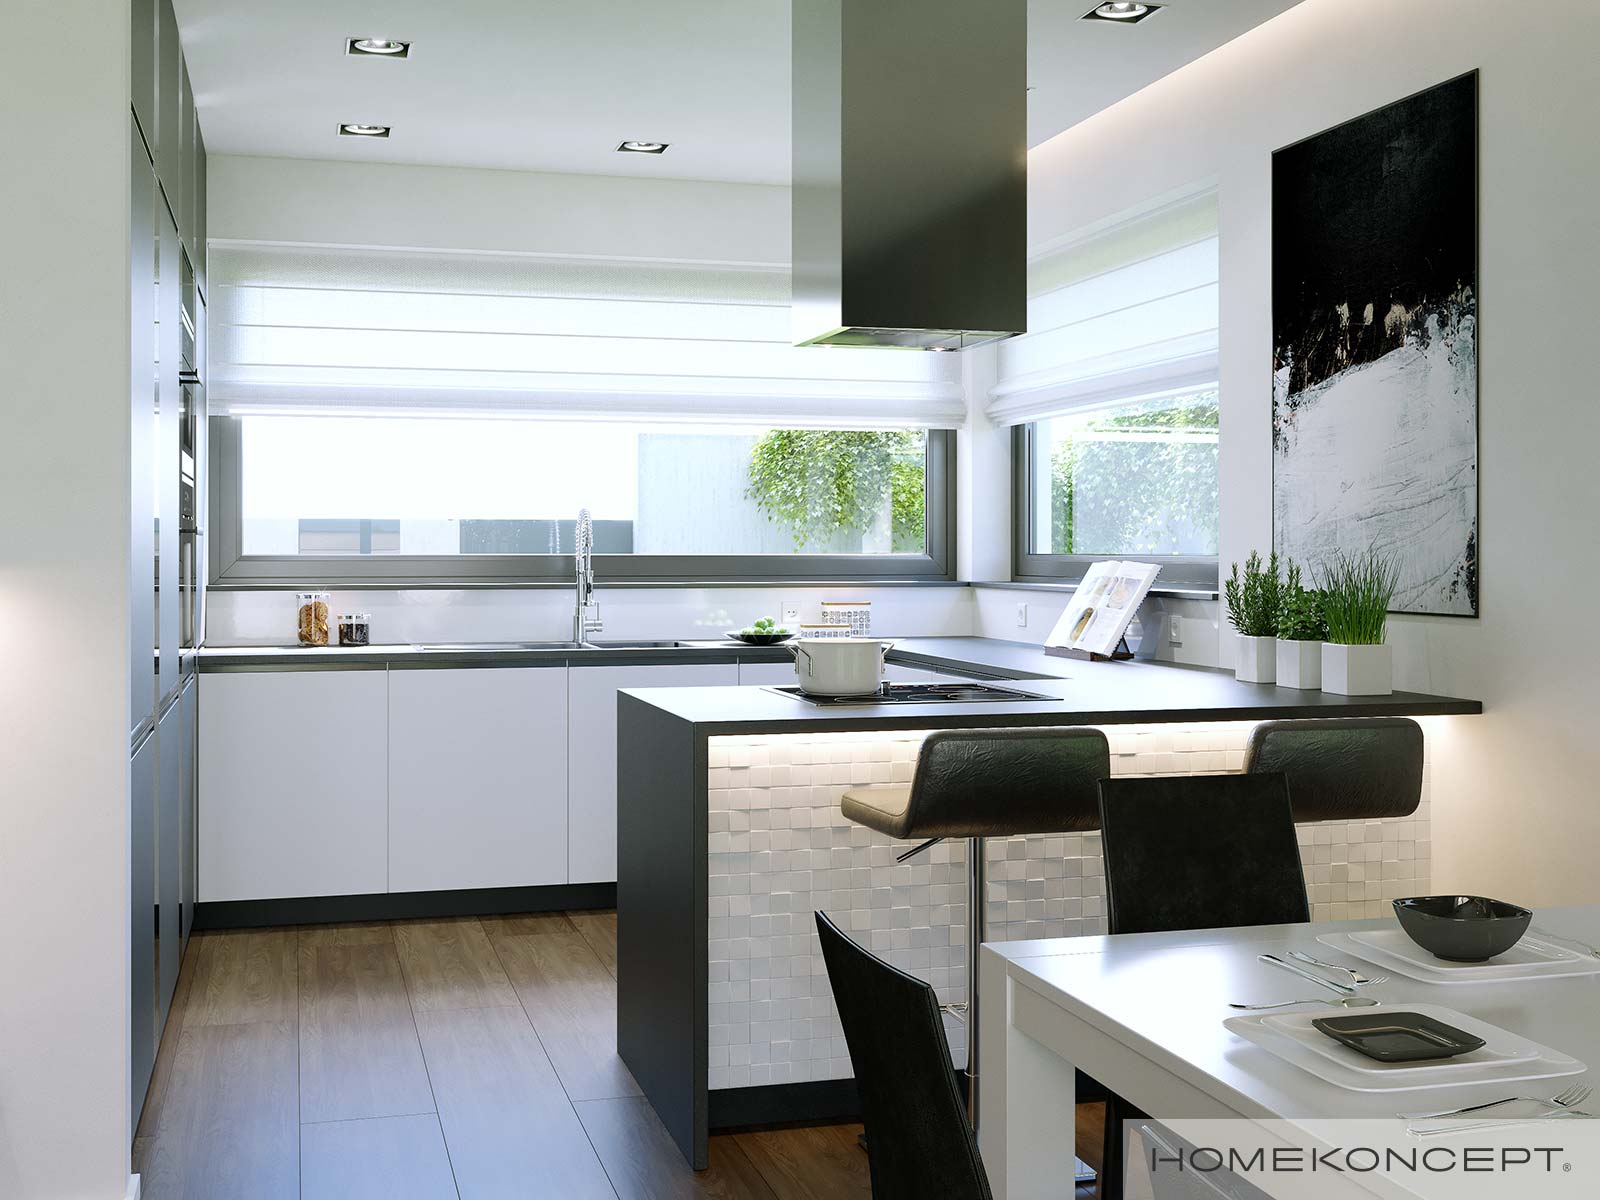 Gotowy projekt domu HomeKONCEPT 43 z oknem narożnym w strefie kuchennej – funkcjonalna kuchnia w domu jednorodzinnym